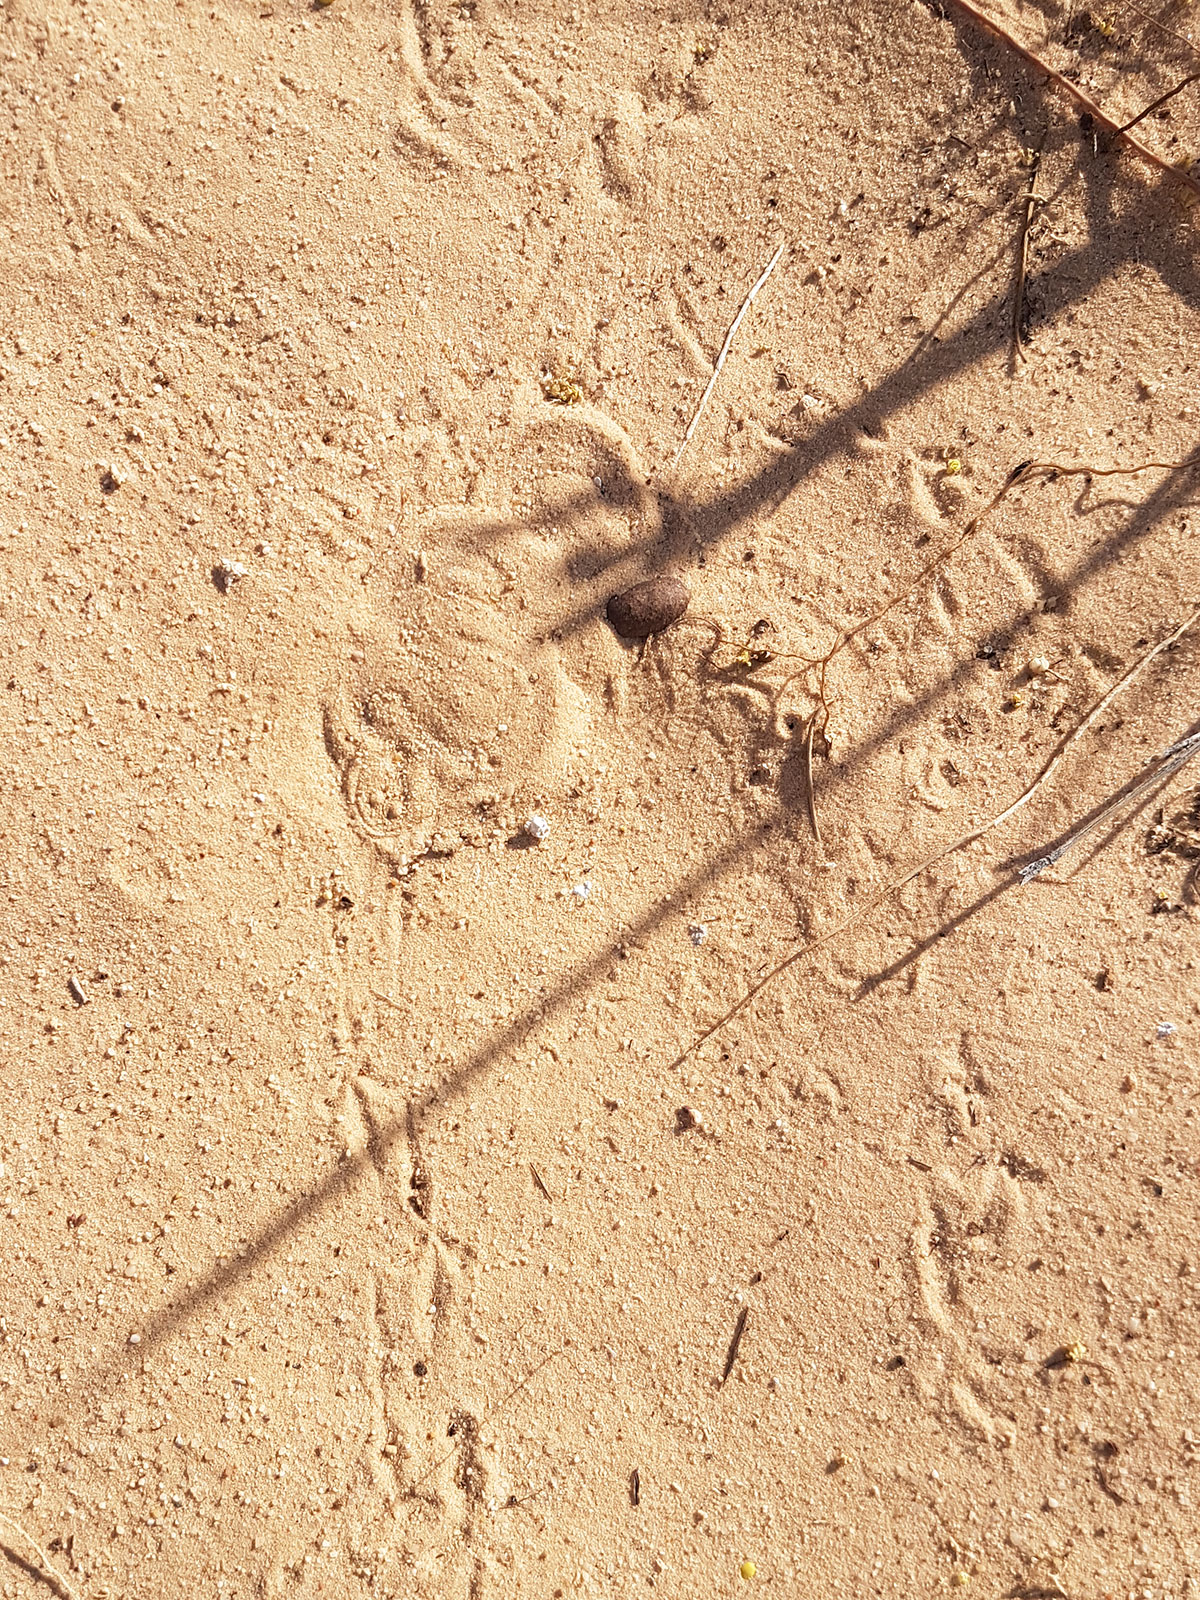 Vipère des sables camouflée